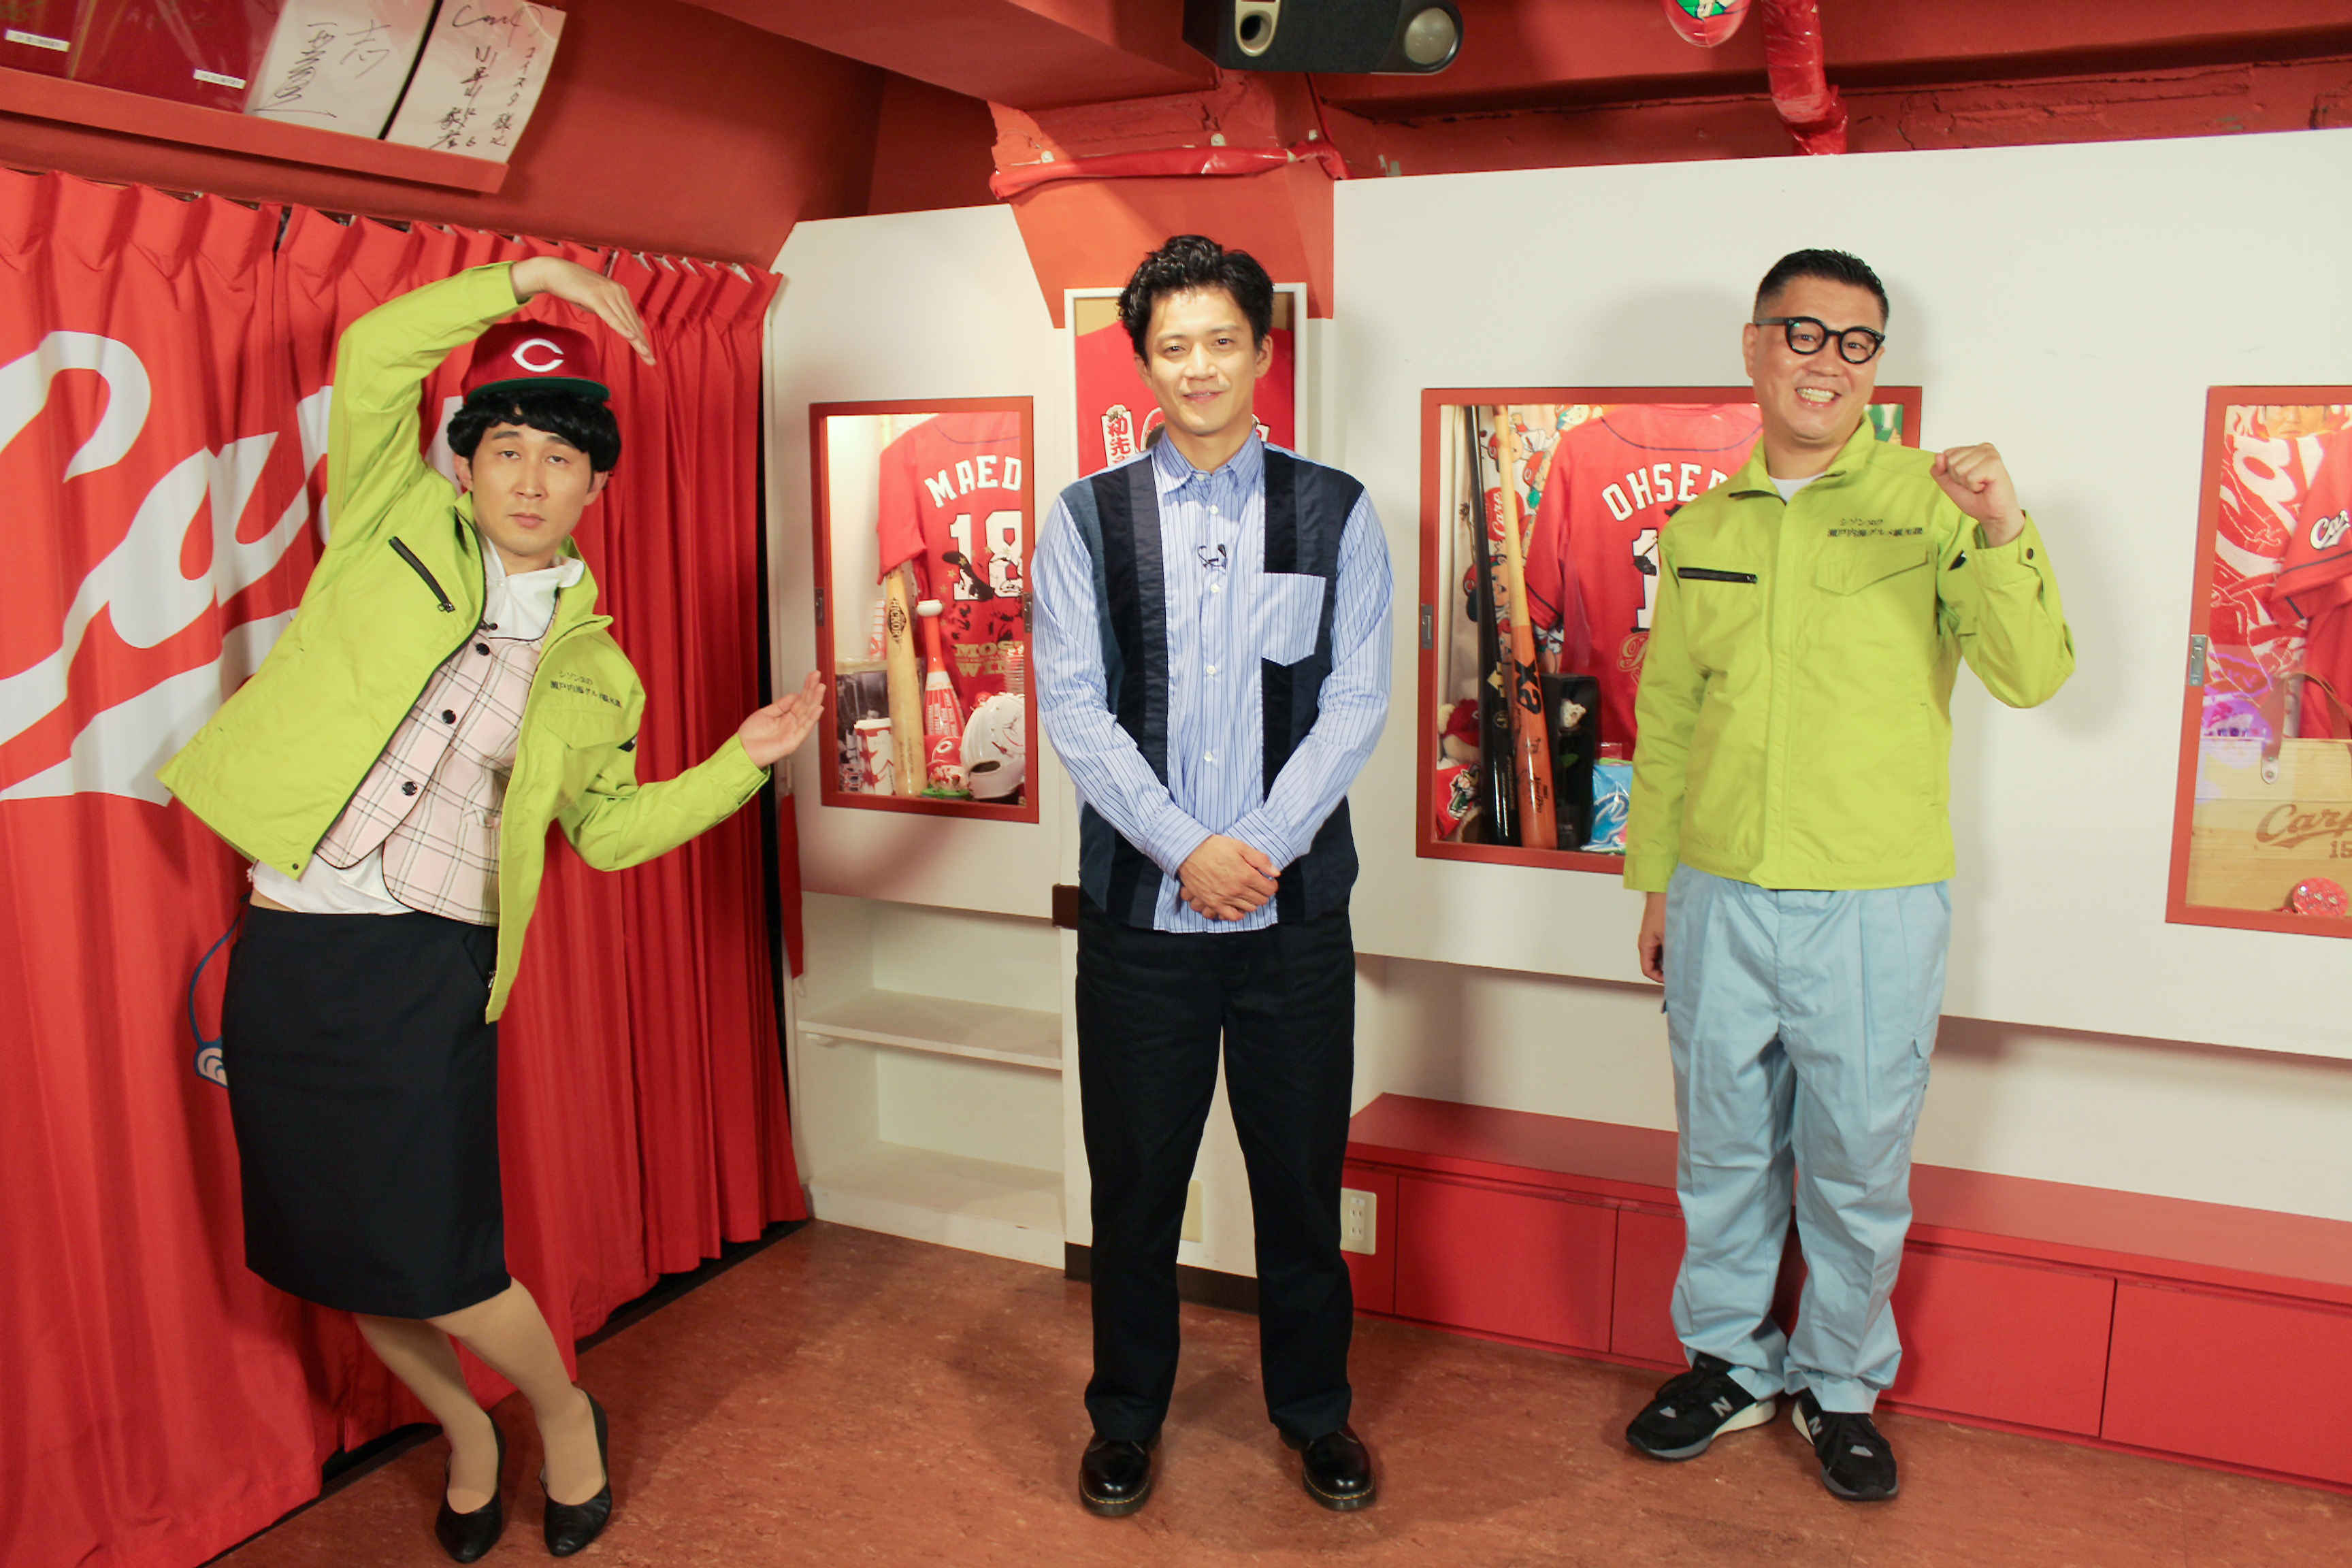 広島ホームテレビ Spゲストは小栗旬 シソンヌが瀬戸内海グルメでおもてなし Newscast